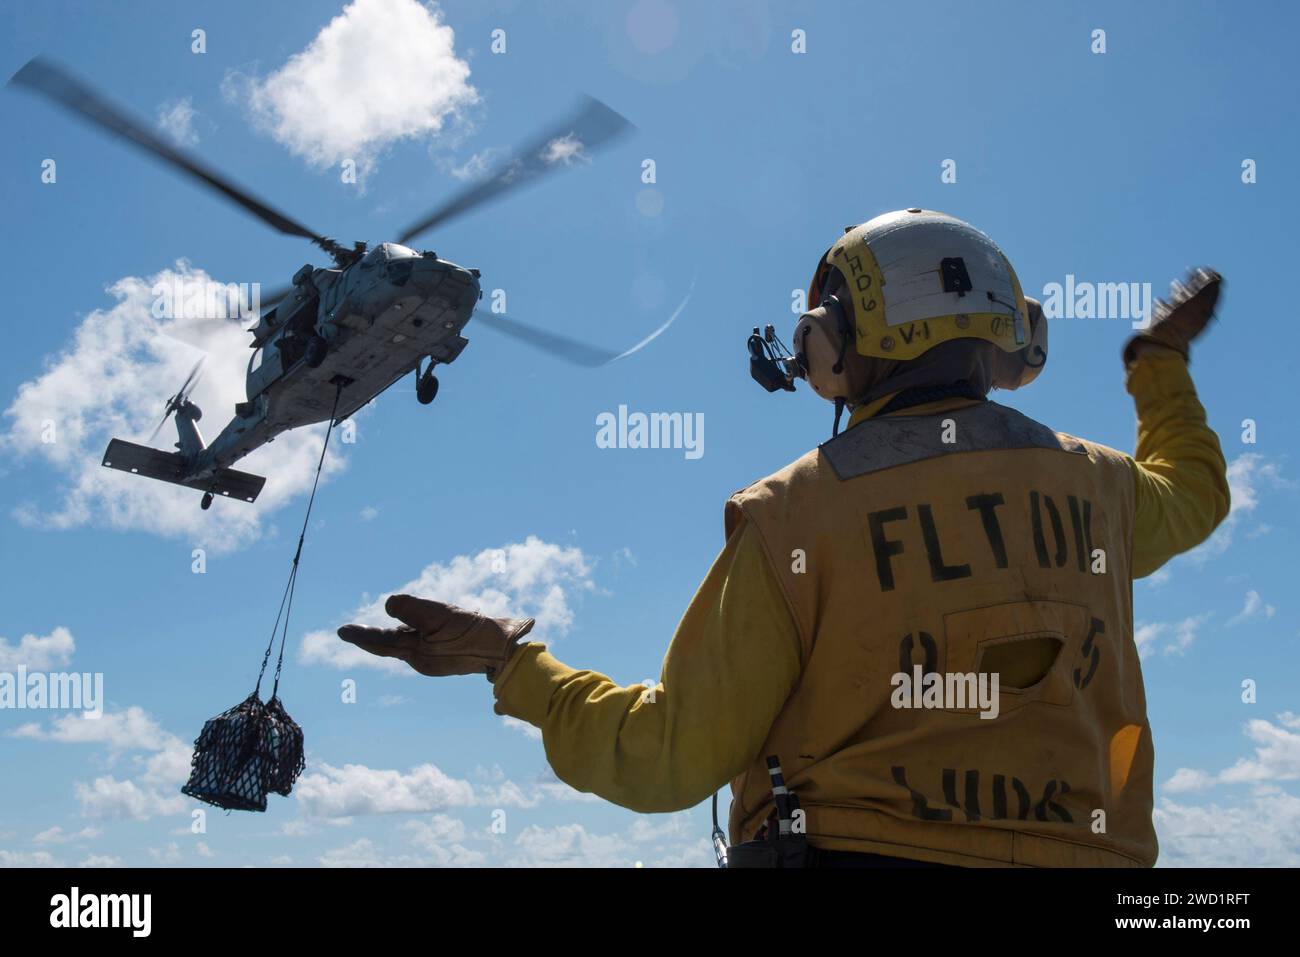 Aviation Boatswain's Mate signale à un pilote d'hélicoptère MH-60S Sea Hawk lors d'un réapprovisionnement vertical. Banque D'Images